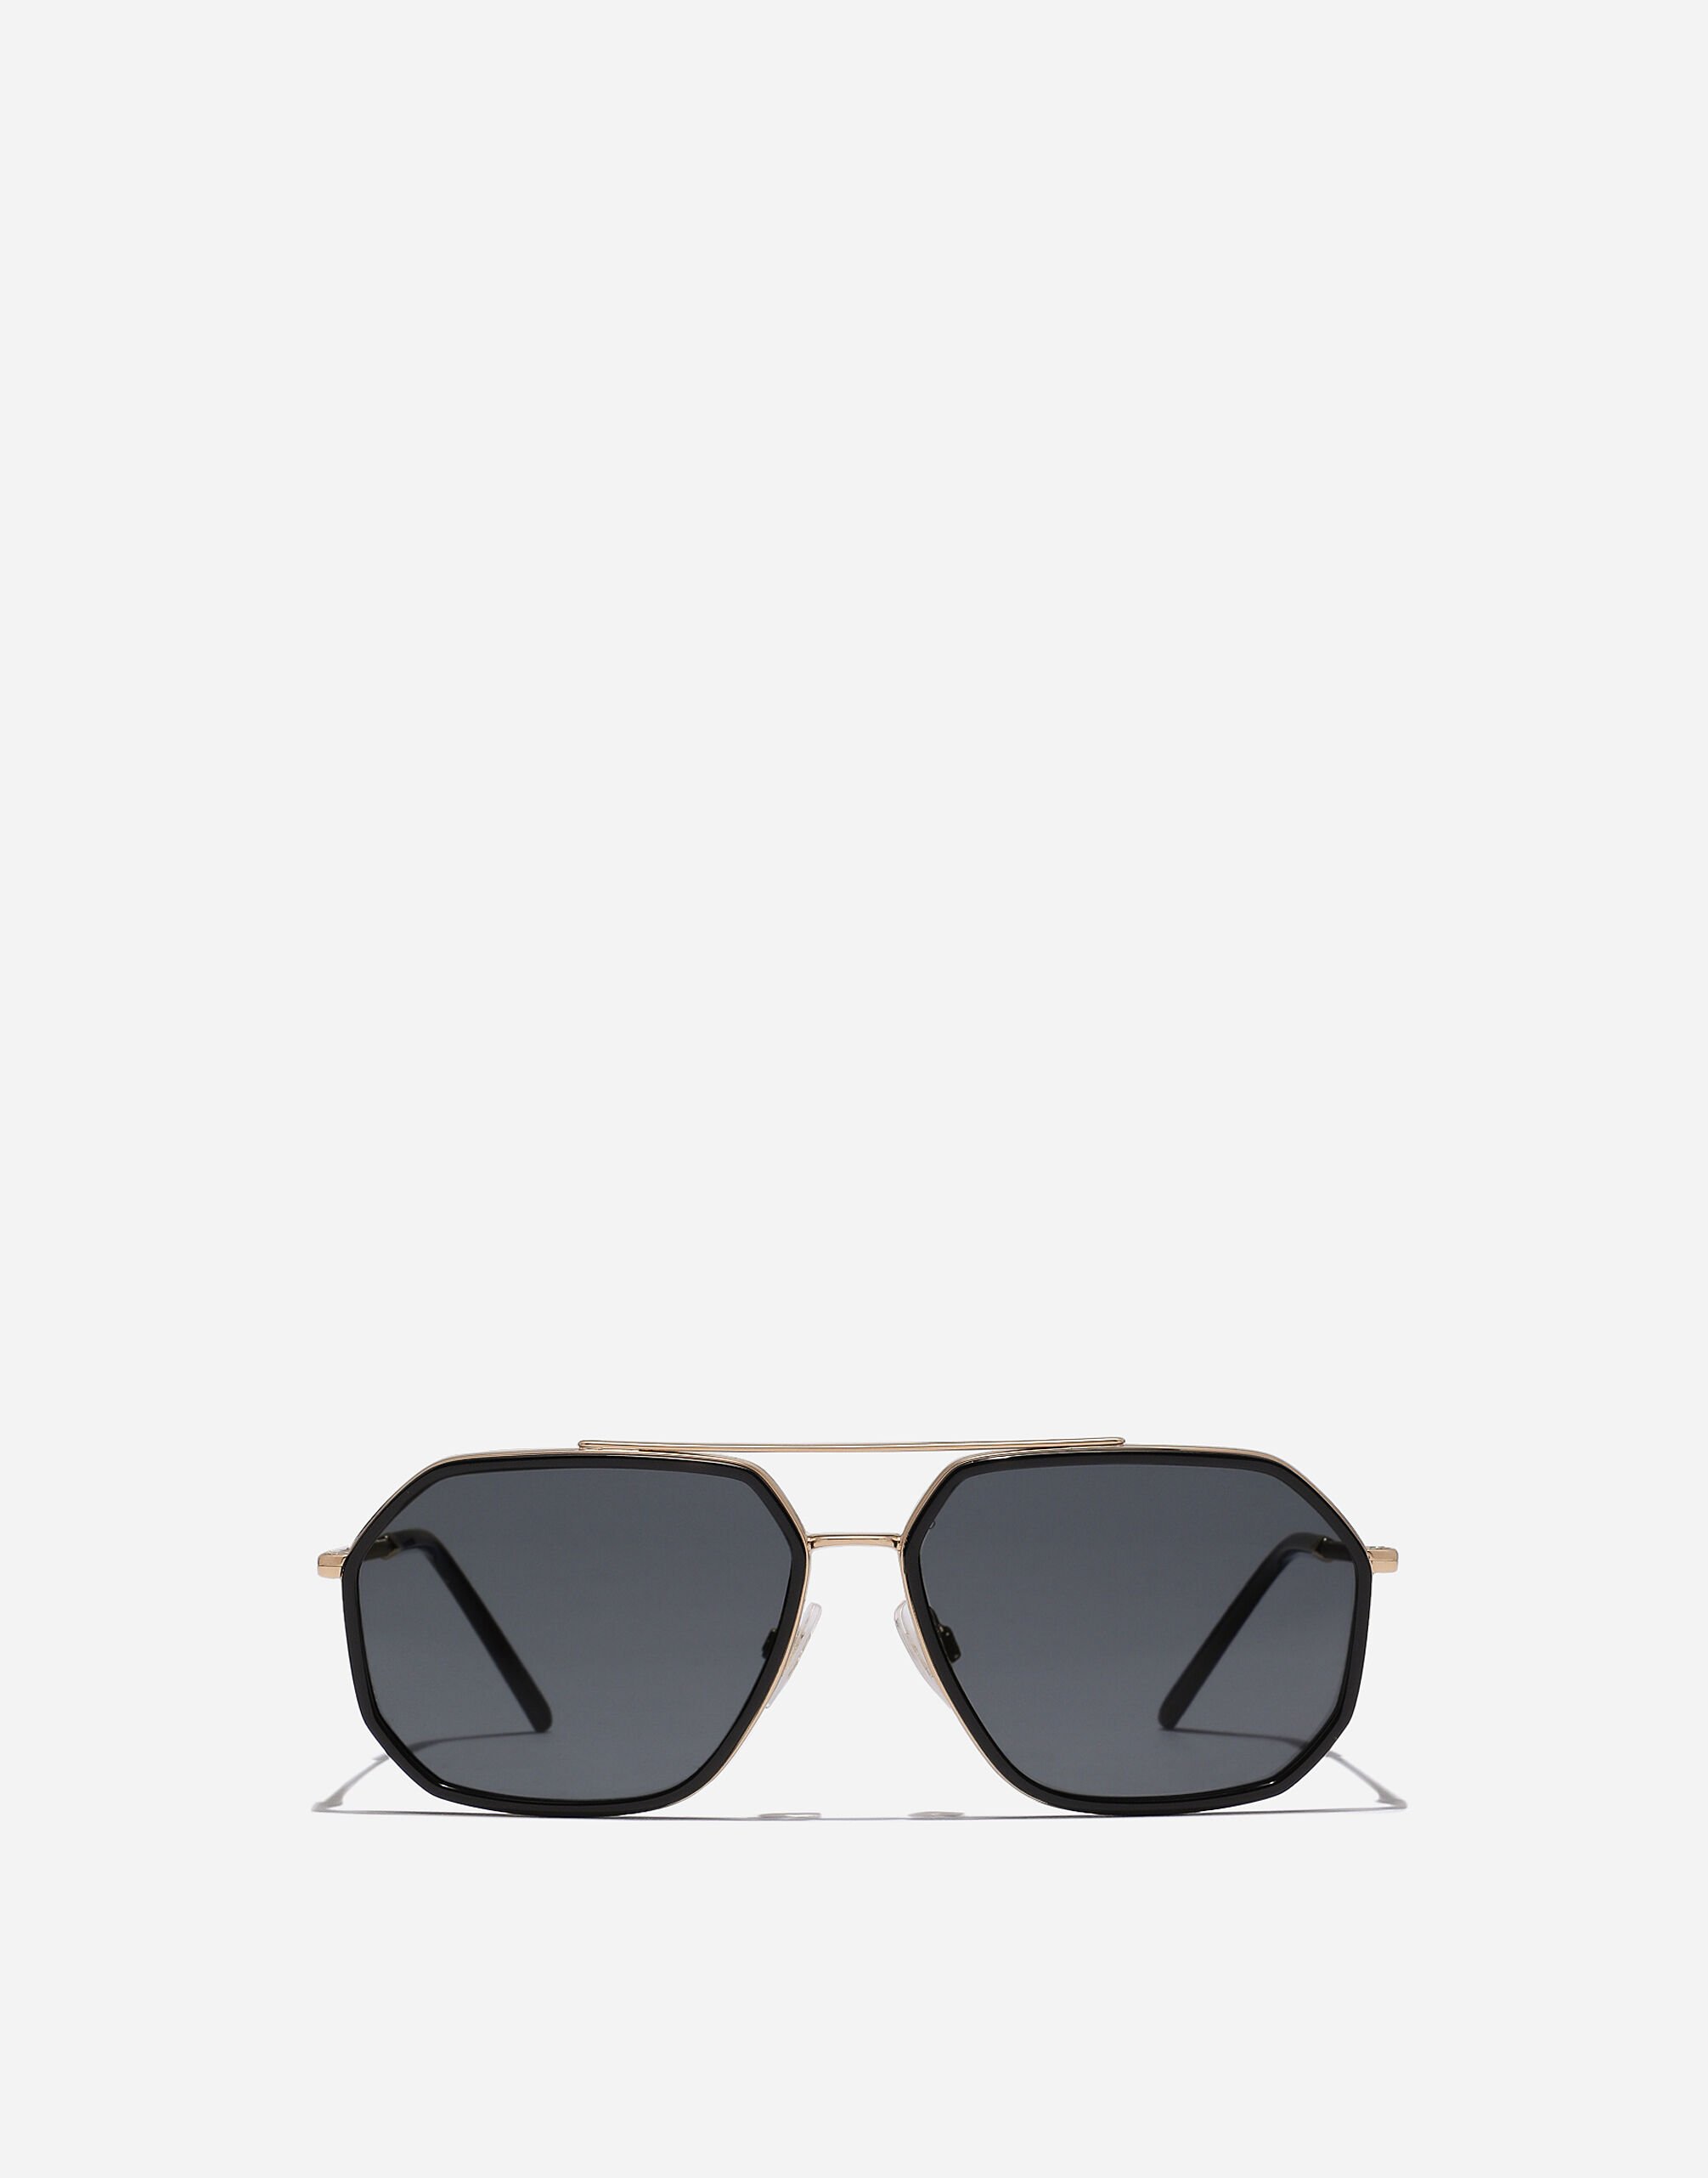 Dolce & Gabbana Gros grain sunglasses Black VG440AVP187